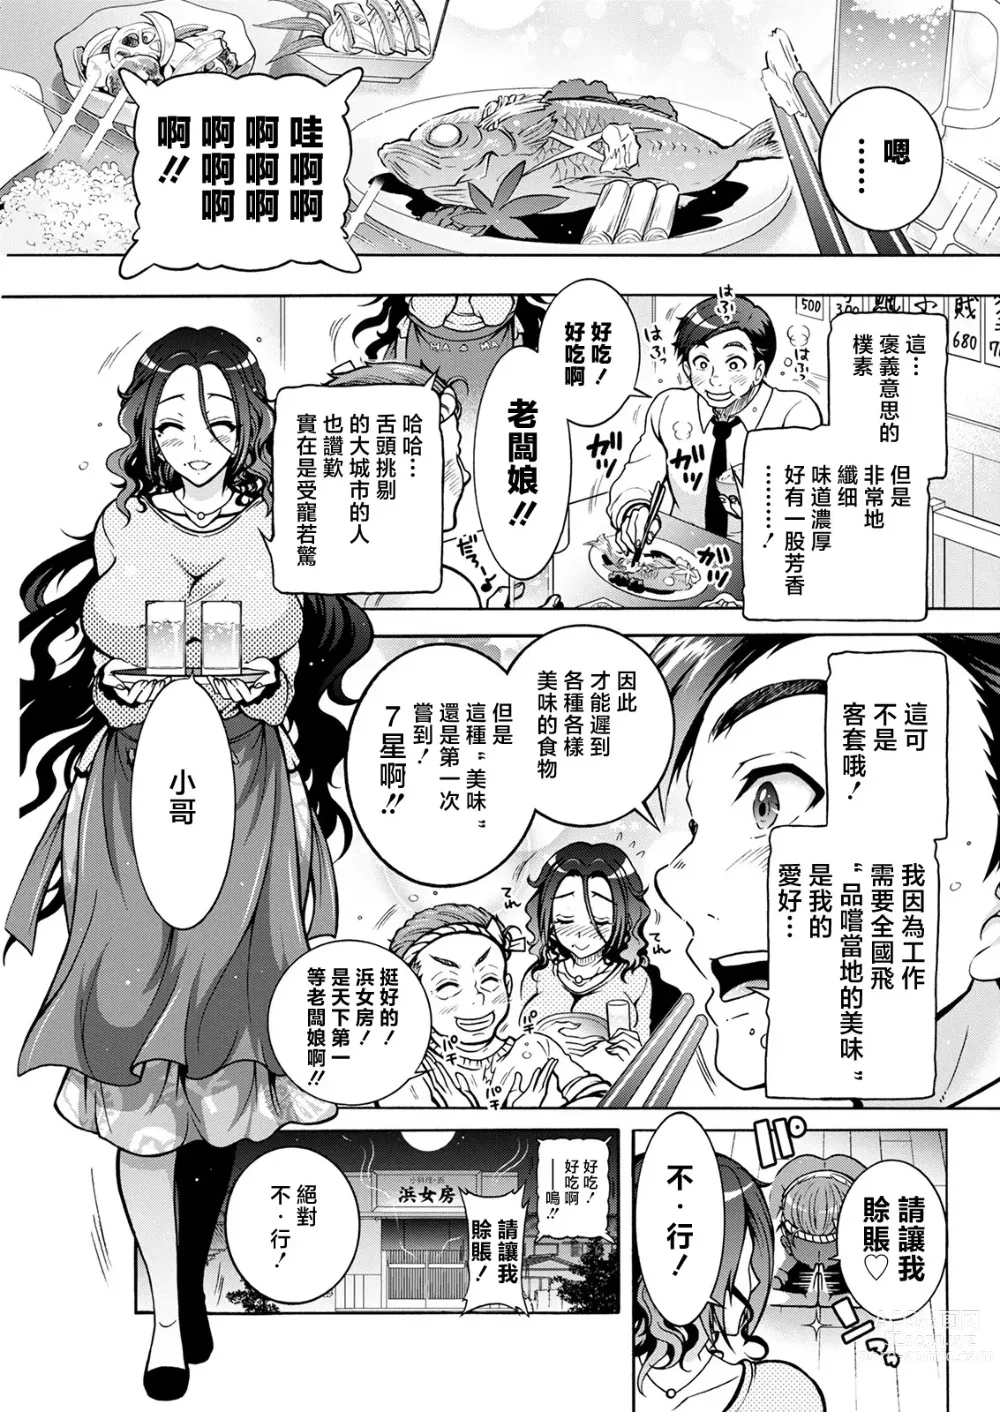 Page 3 of manga Youkai Echichi Ch. 3